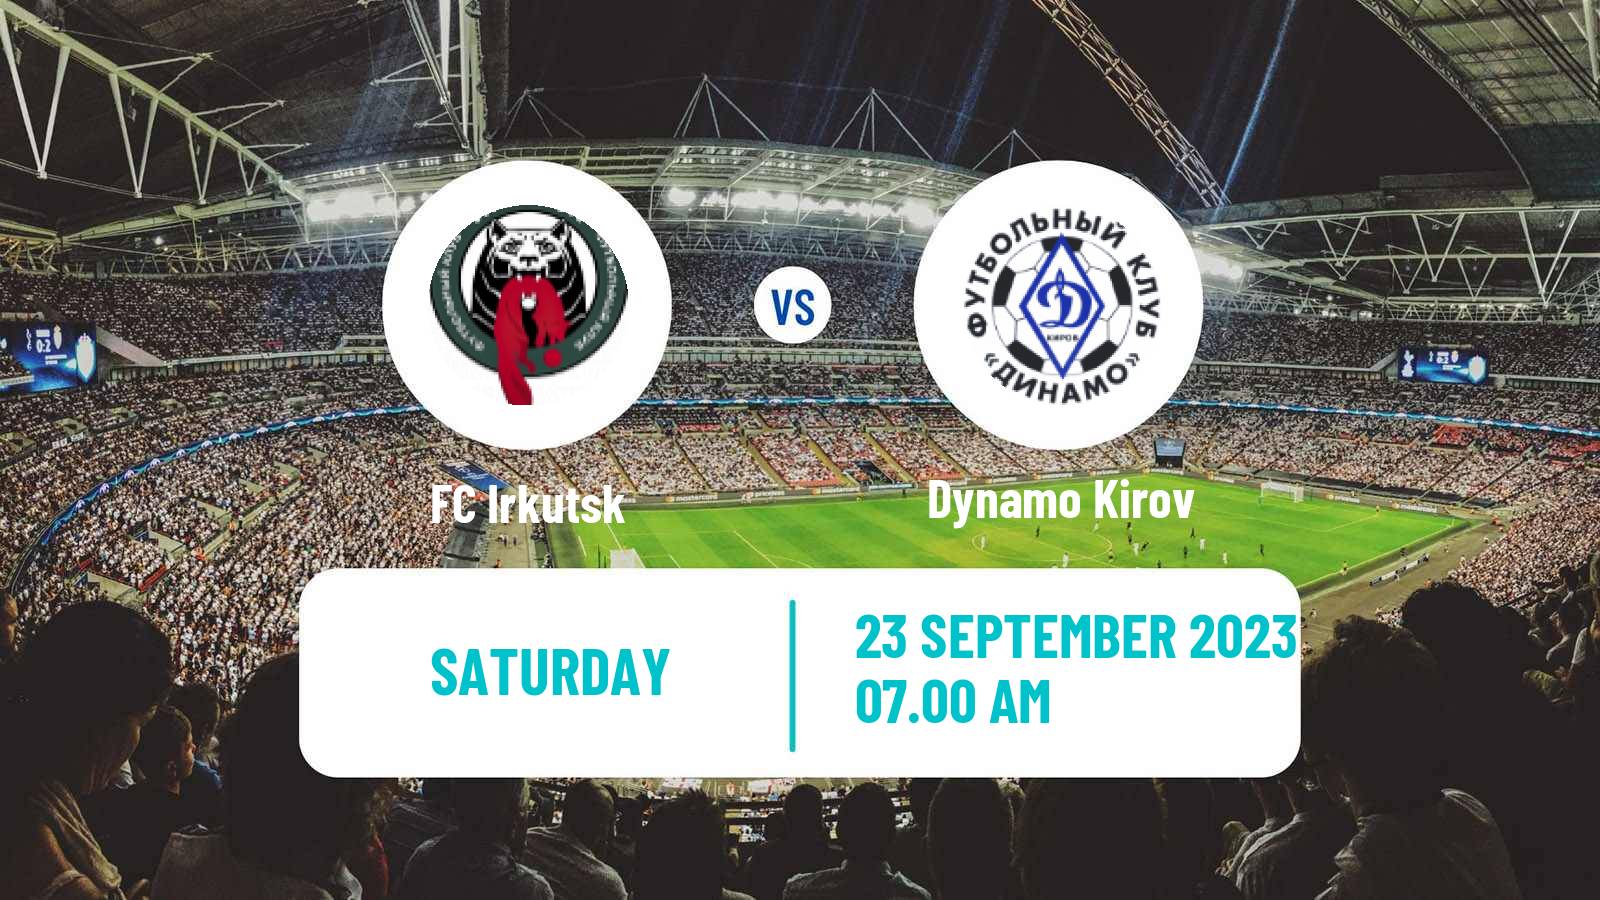 Soccer FNL 2 Division B Group 2 Irkutsk - Dynamo Kirov